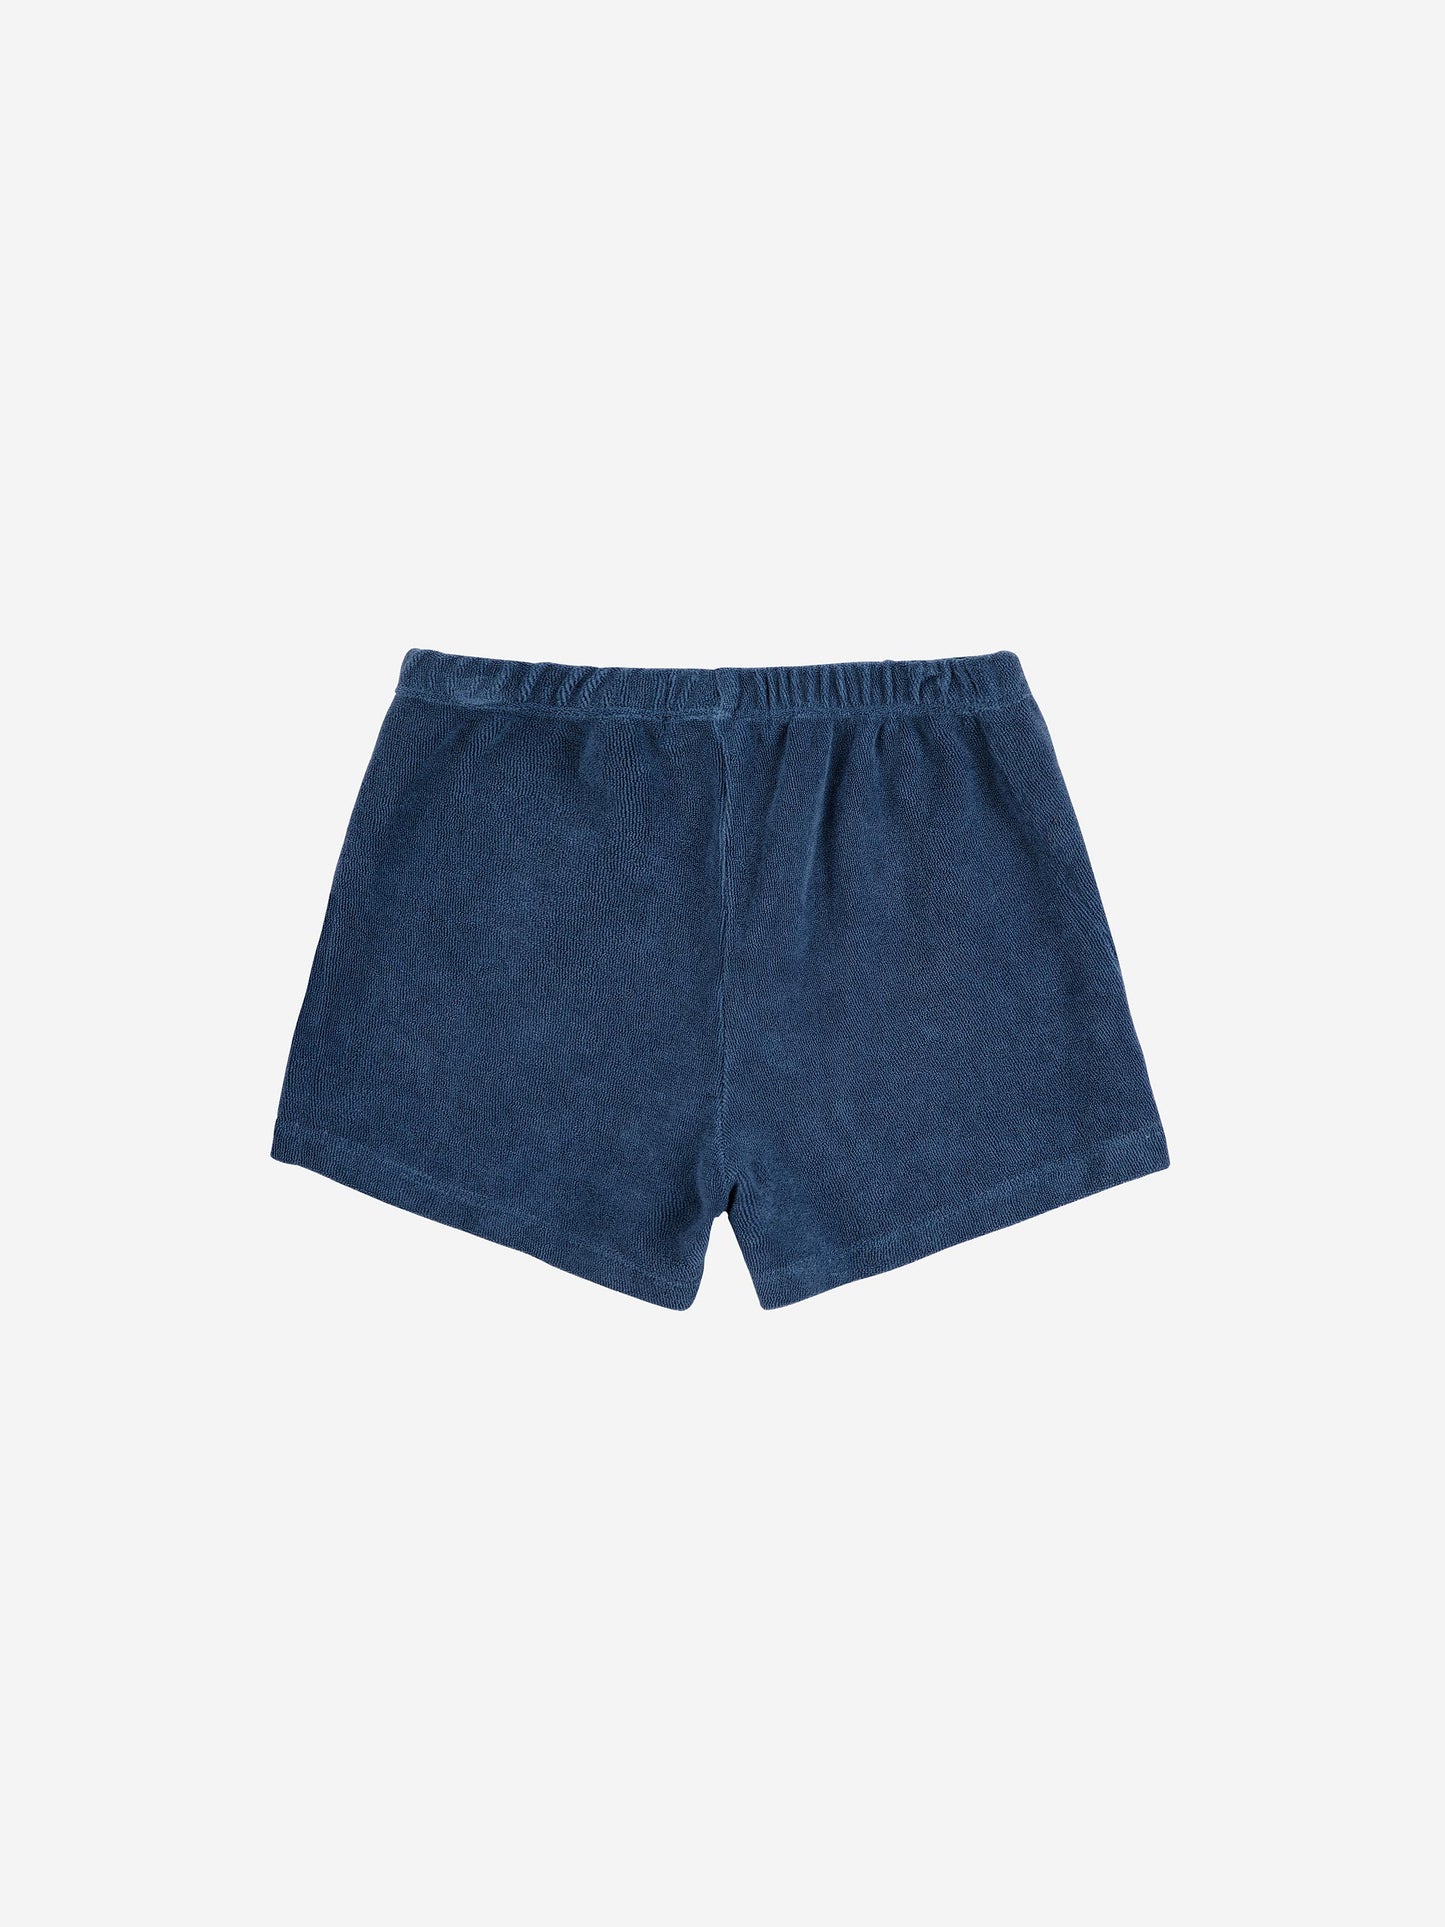 Pantalón corto azul marino Bobo Choses